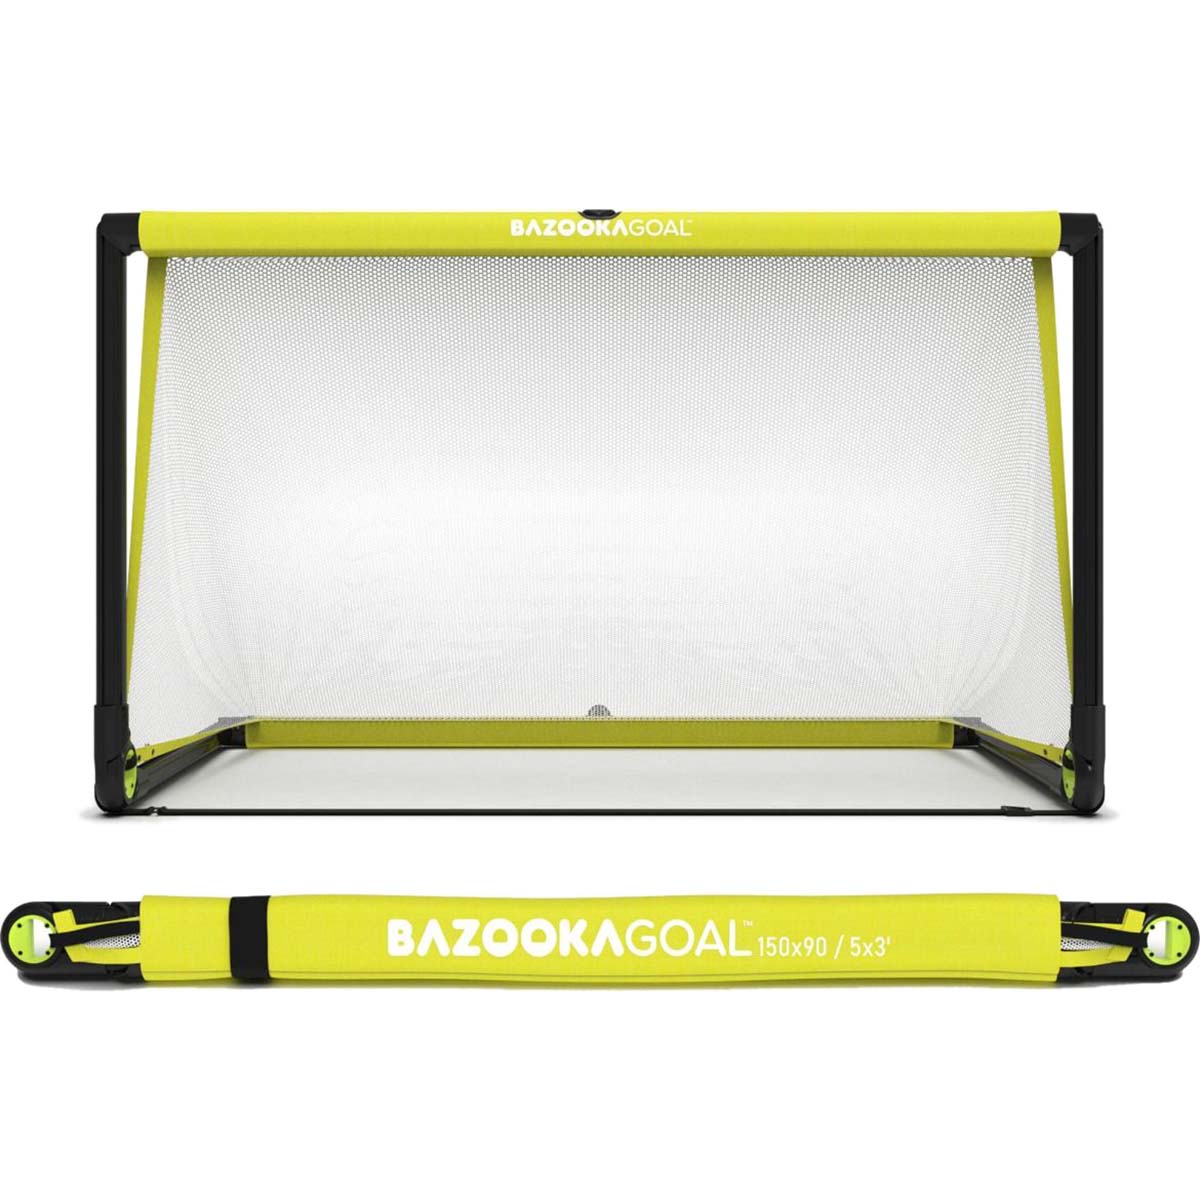 BazookaGoal Original 150x90cm - White/Yellow